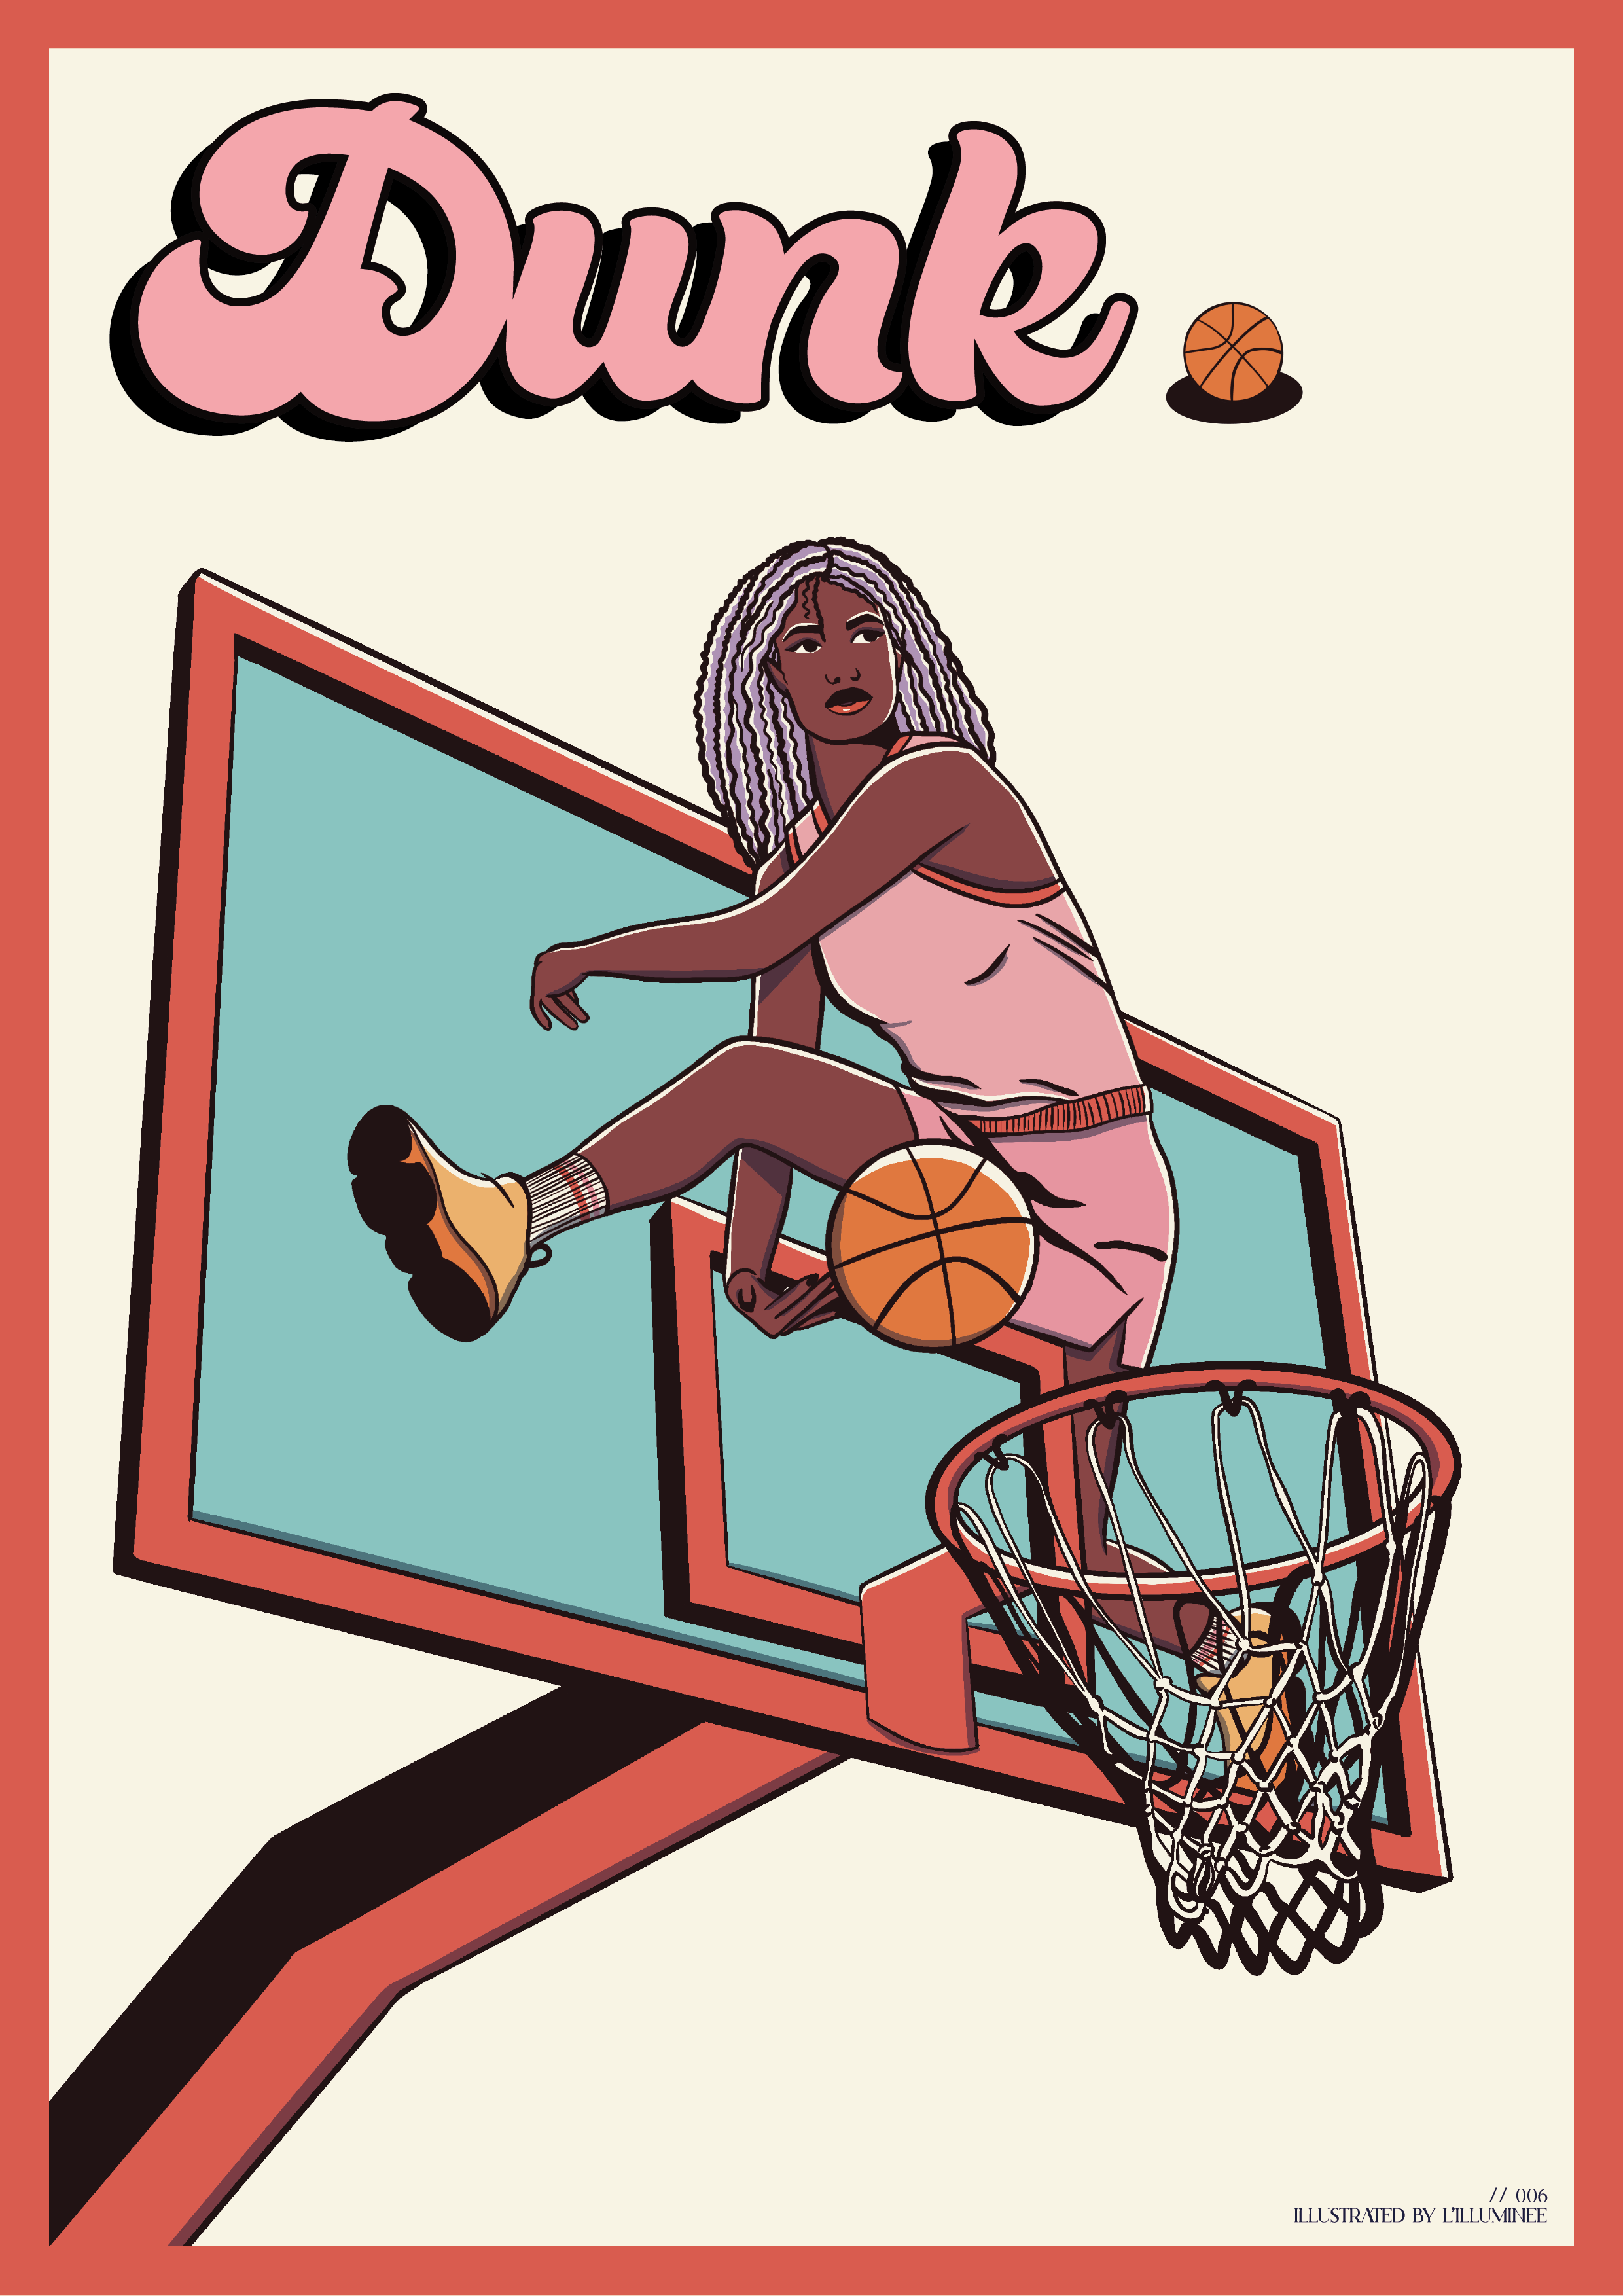 Affiche Tournoi de l'amitié #france #basket #basketball #poster